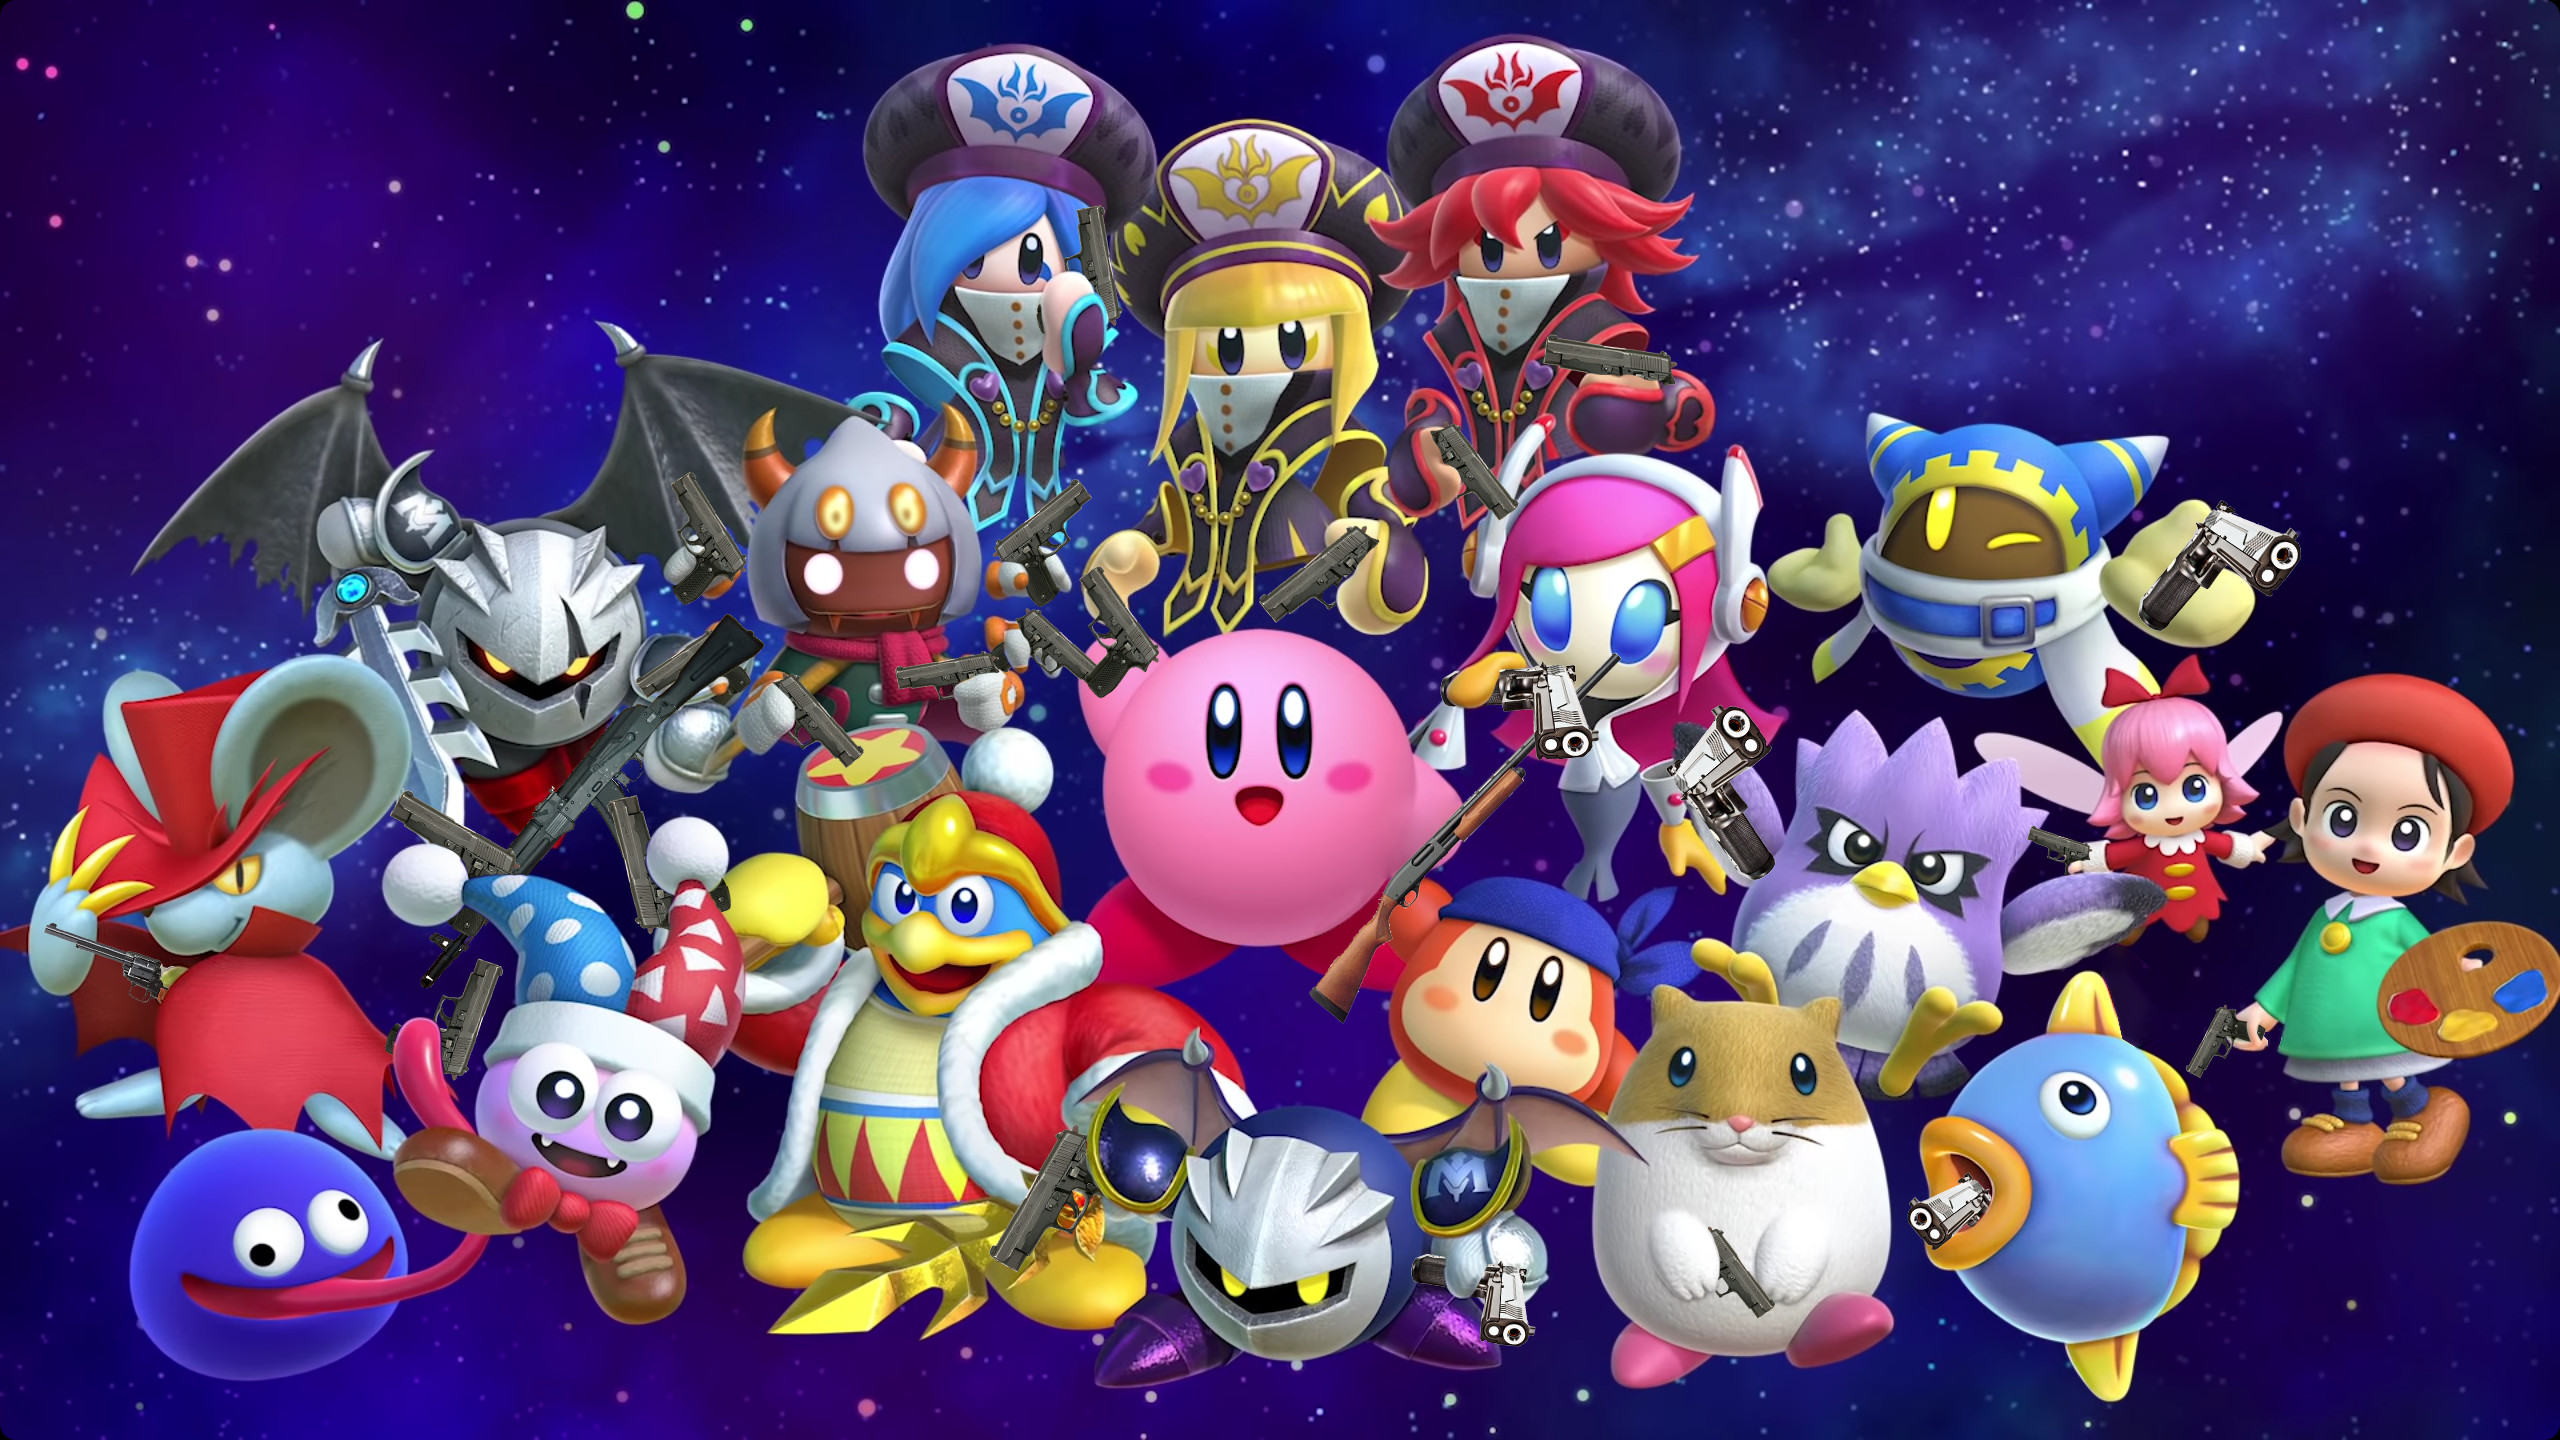 2560x1440 Kirby Star Allies Kirby's Dream Land Nintendo Switch cartoon...